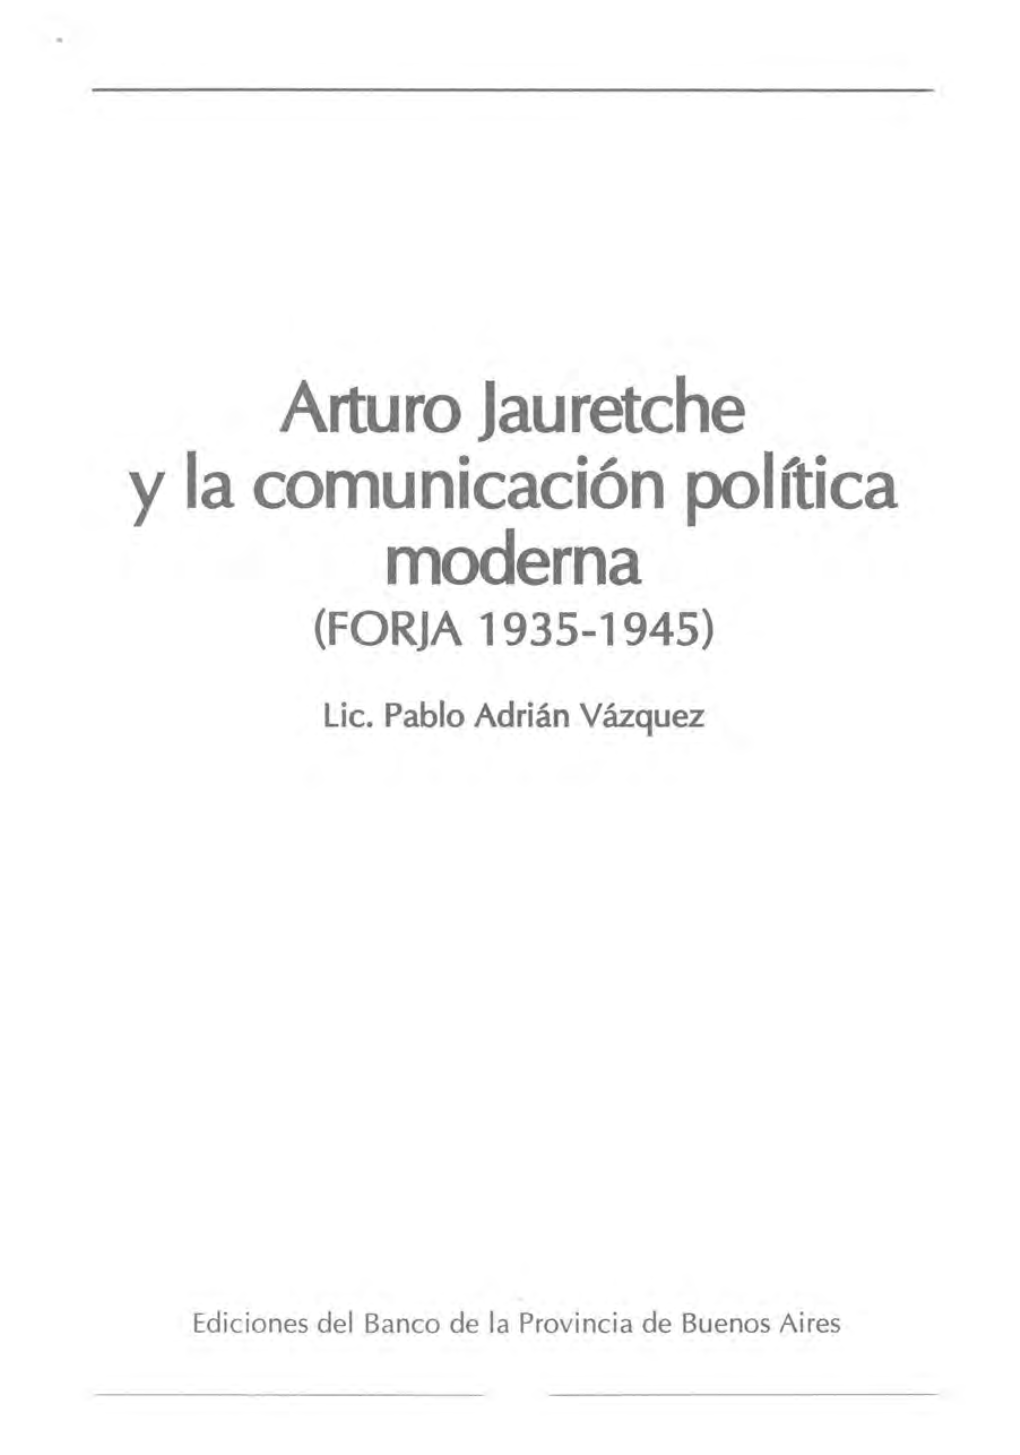 Arturo Jauretche Y La Comunicación Política Moderna (FORJA 1935-1945)